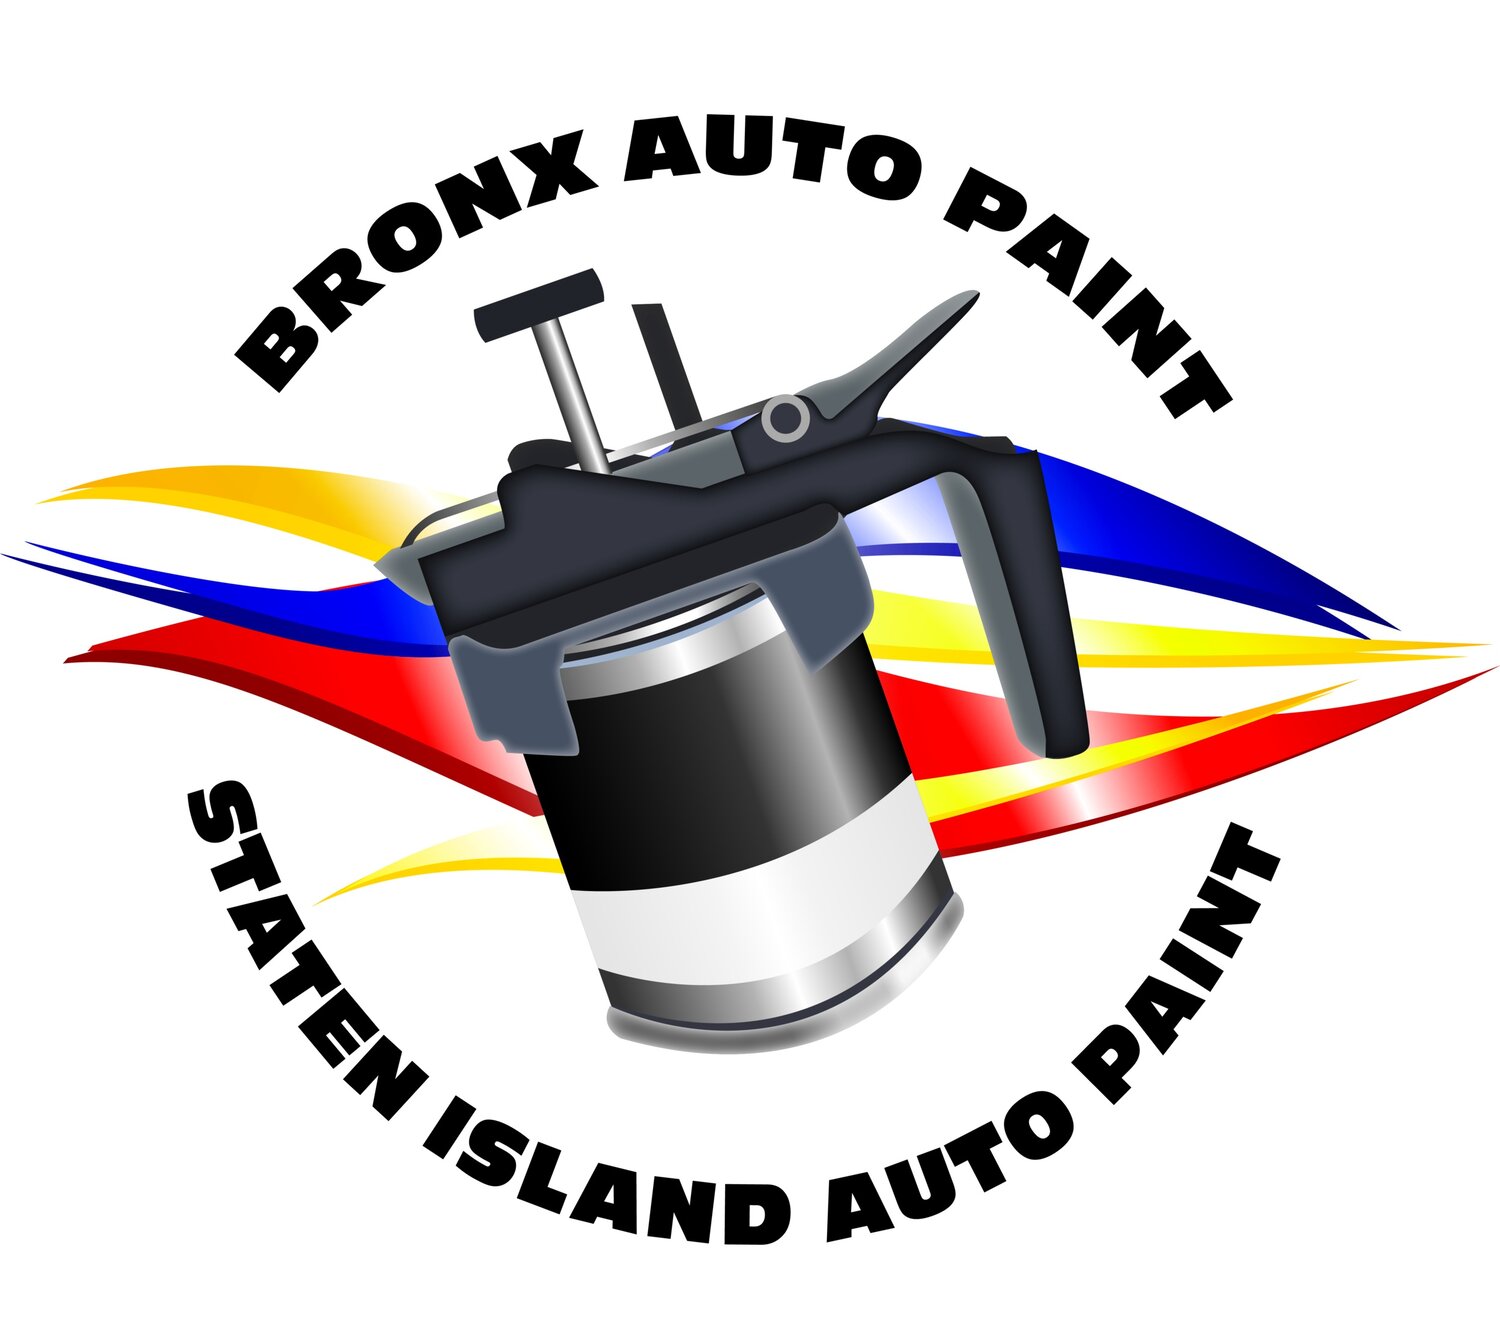 Bronx Auto Paint / Staten Island Auto Paint